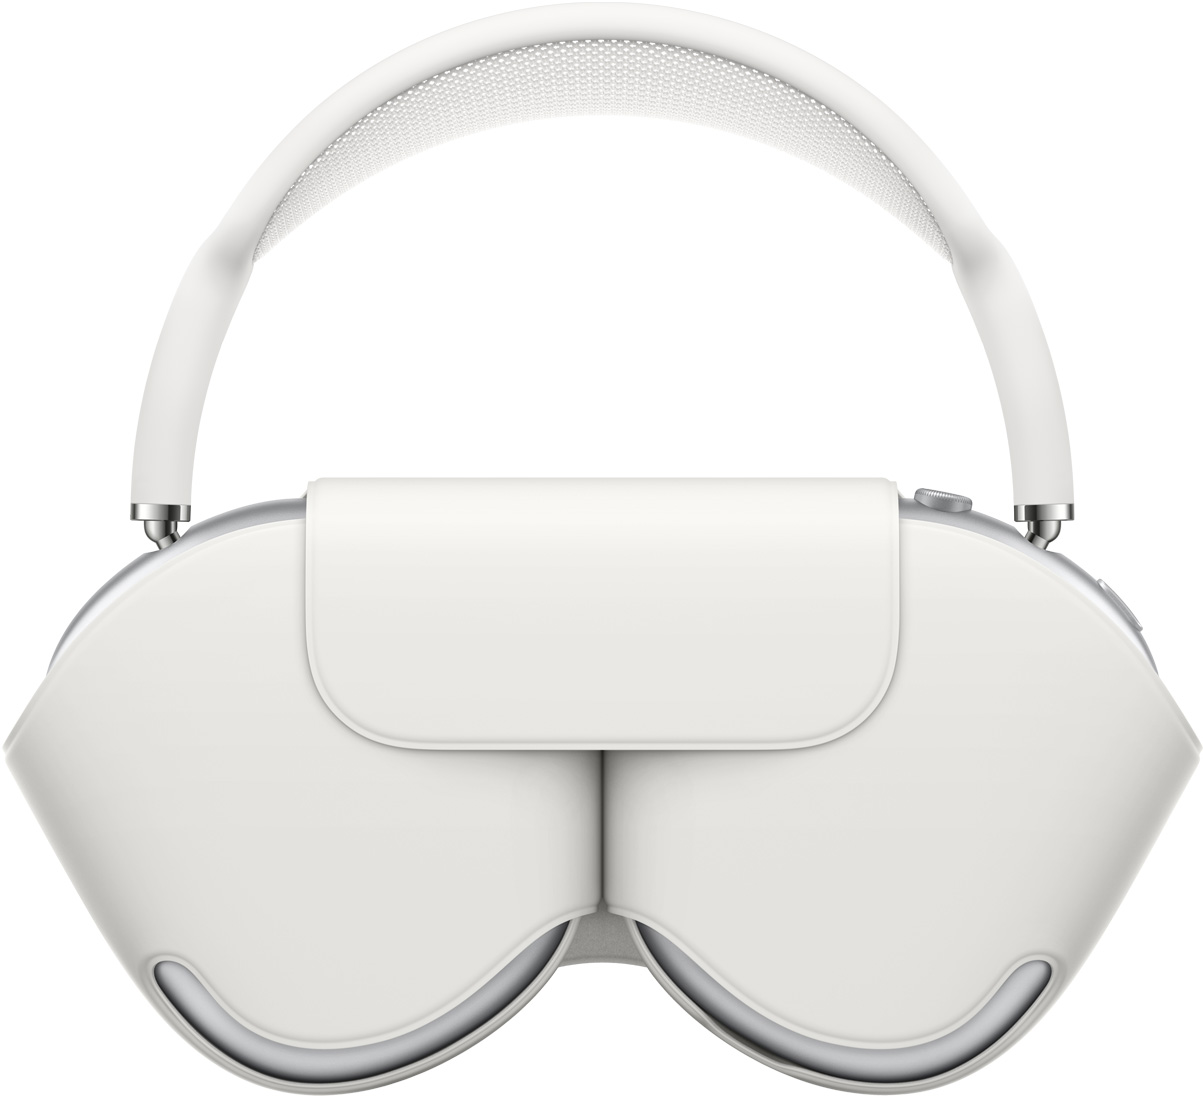 AirPods Max em prateado com a Smart Case em branco que protege as conchas; o arco fica fora do estojo.